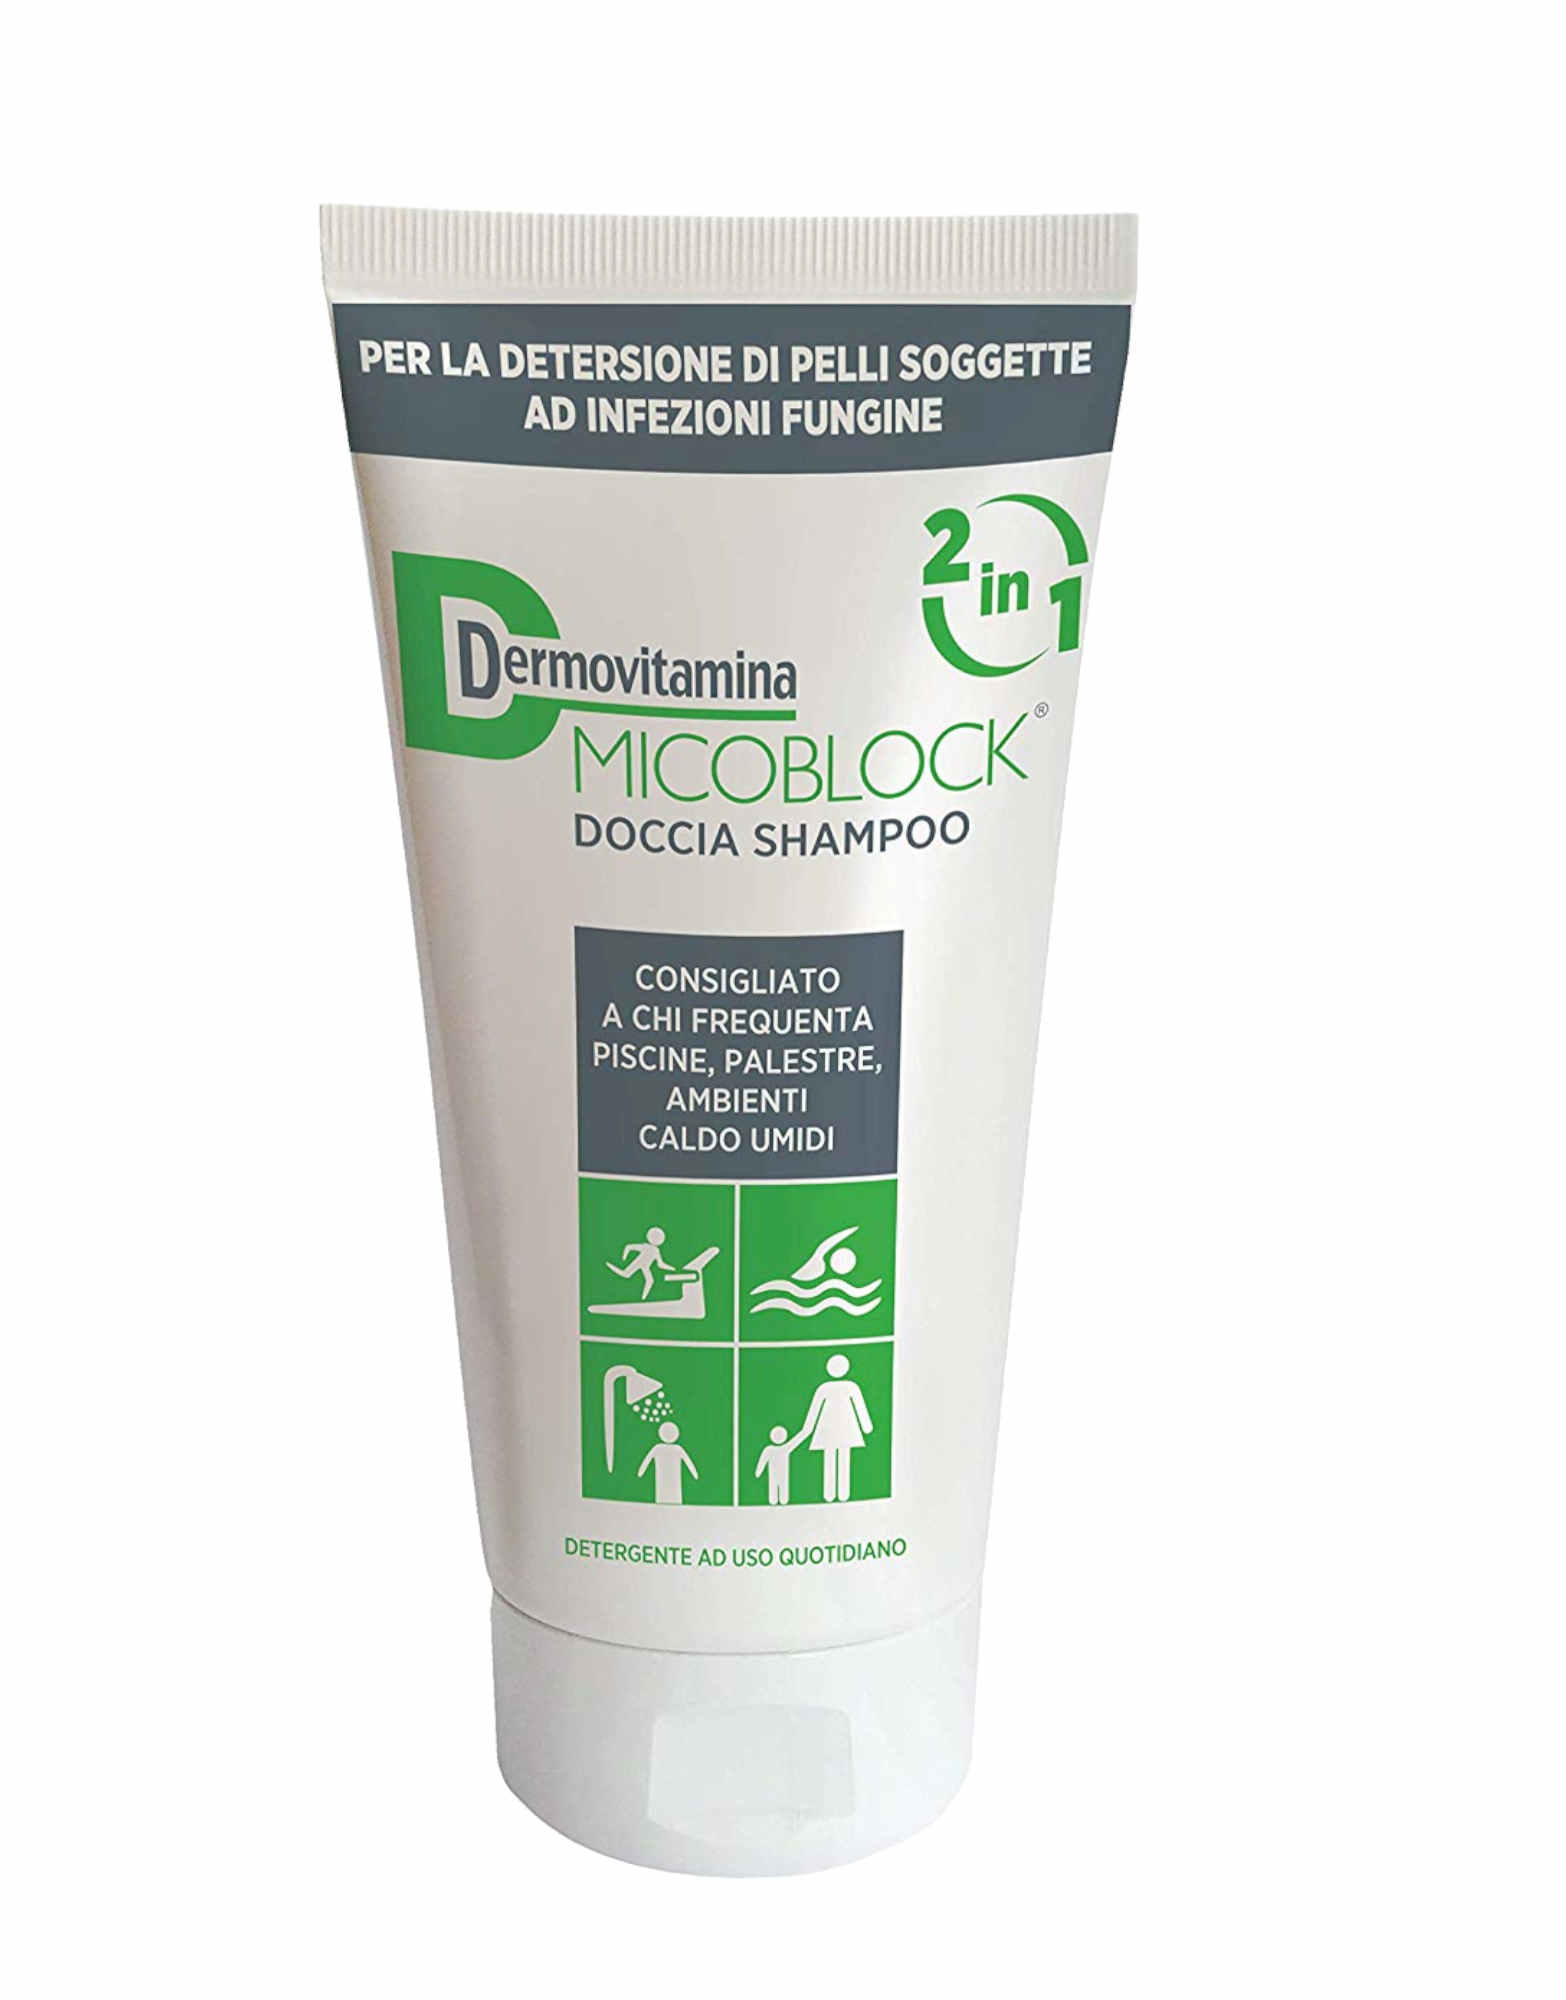 DERMOVITAMINA Micoblock Doccia Shampoo 2 In 1 200ml